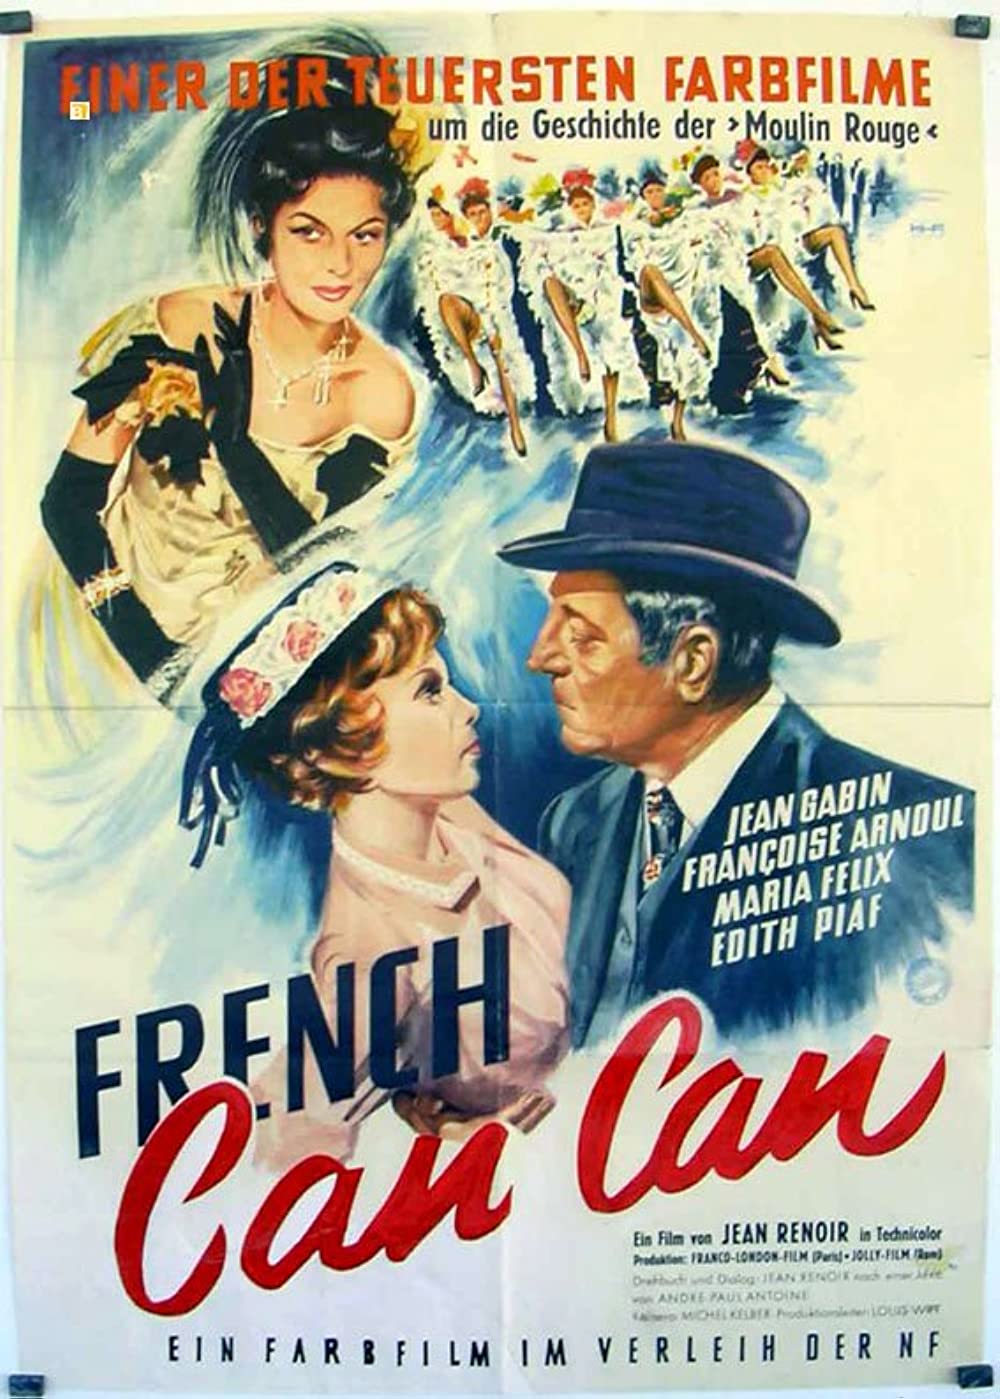 French CanCan (OV)